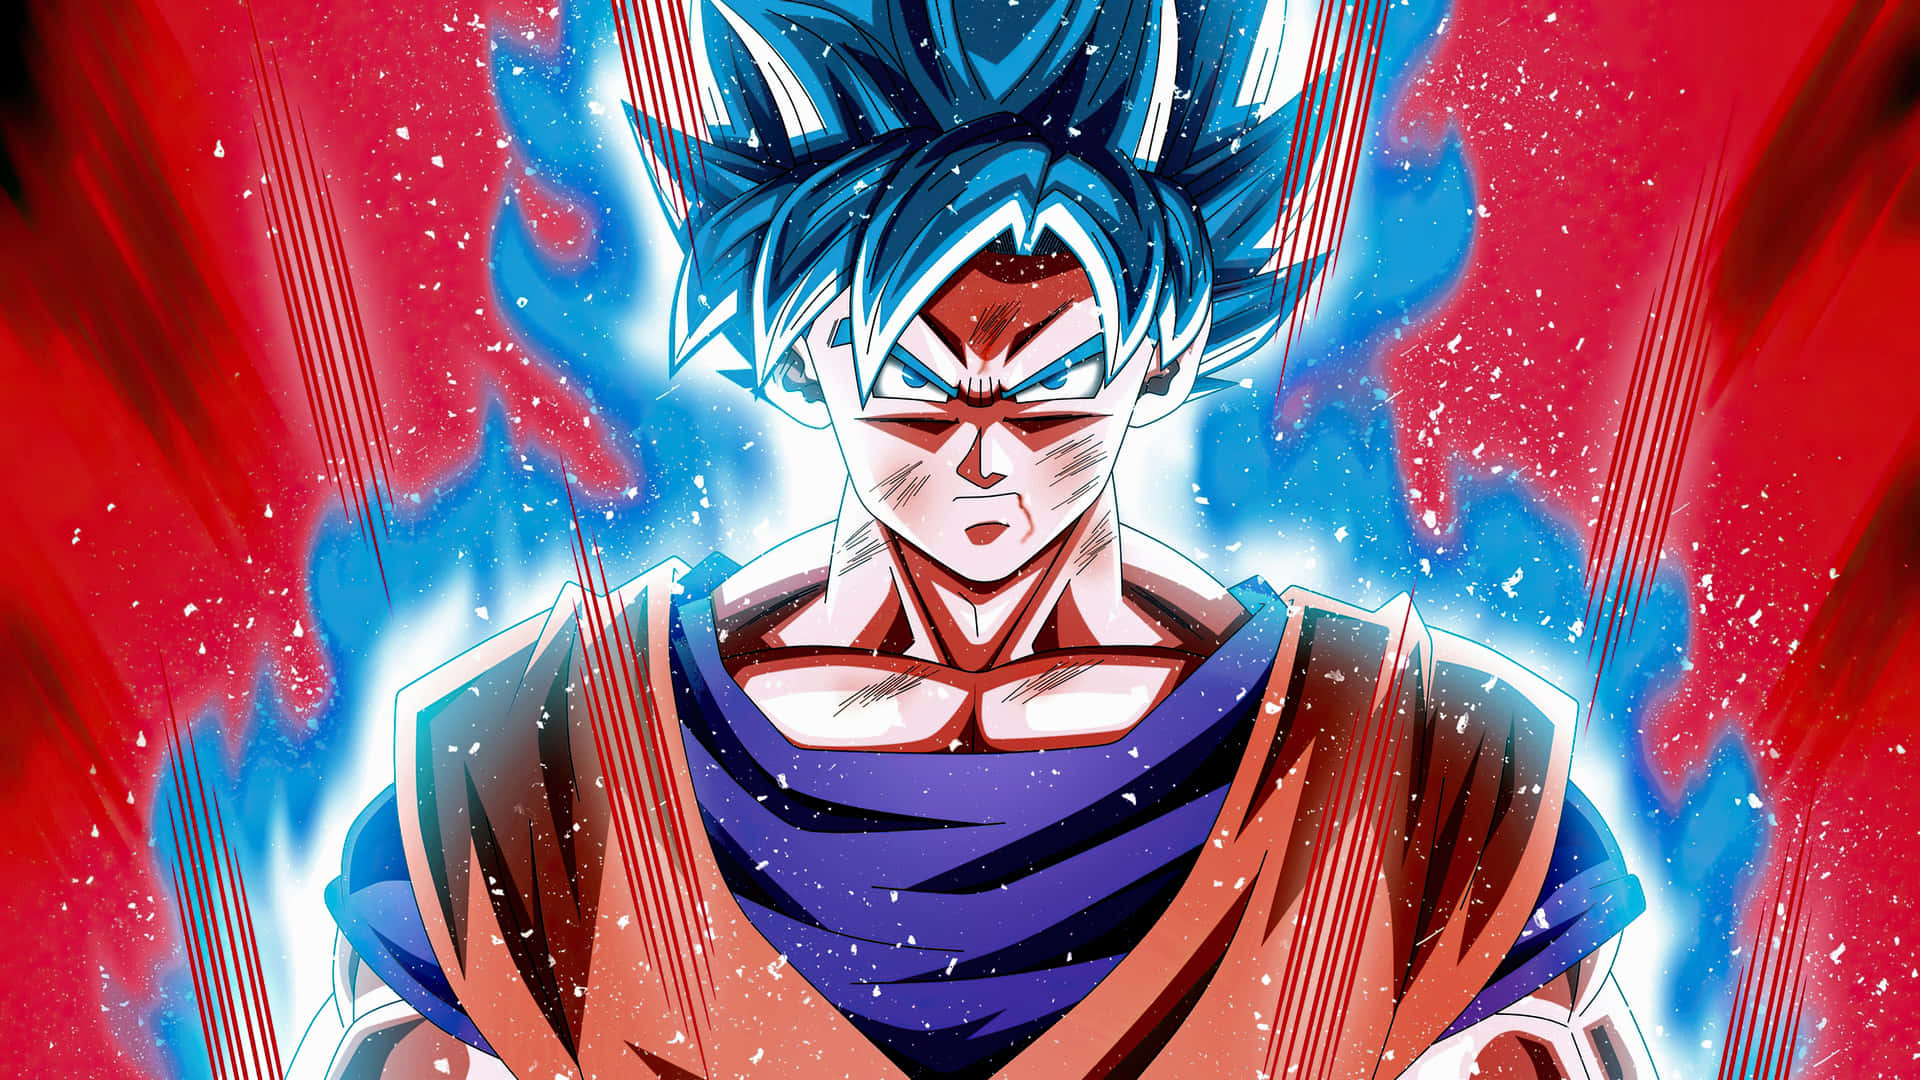 Blåanimebakgrund Med Goku Från Dragon Ball.